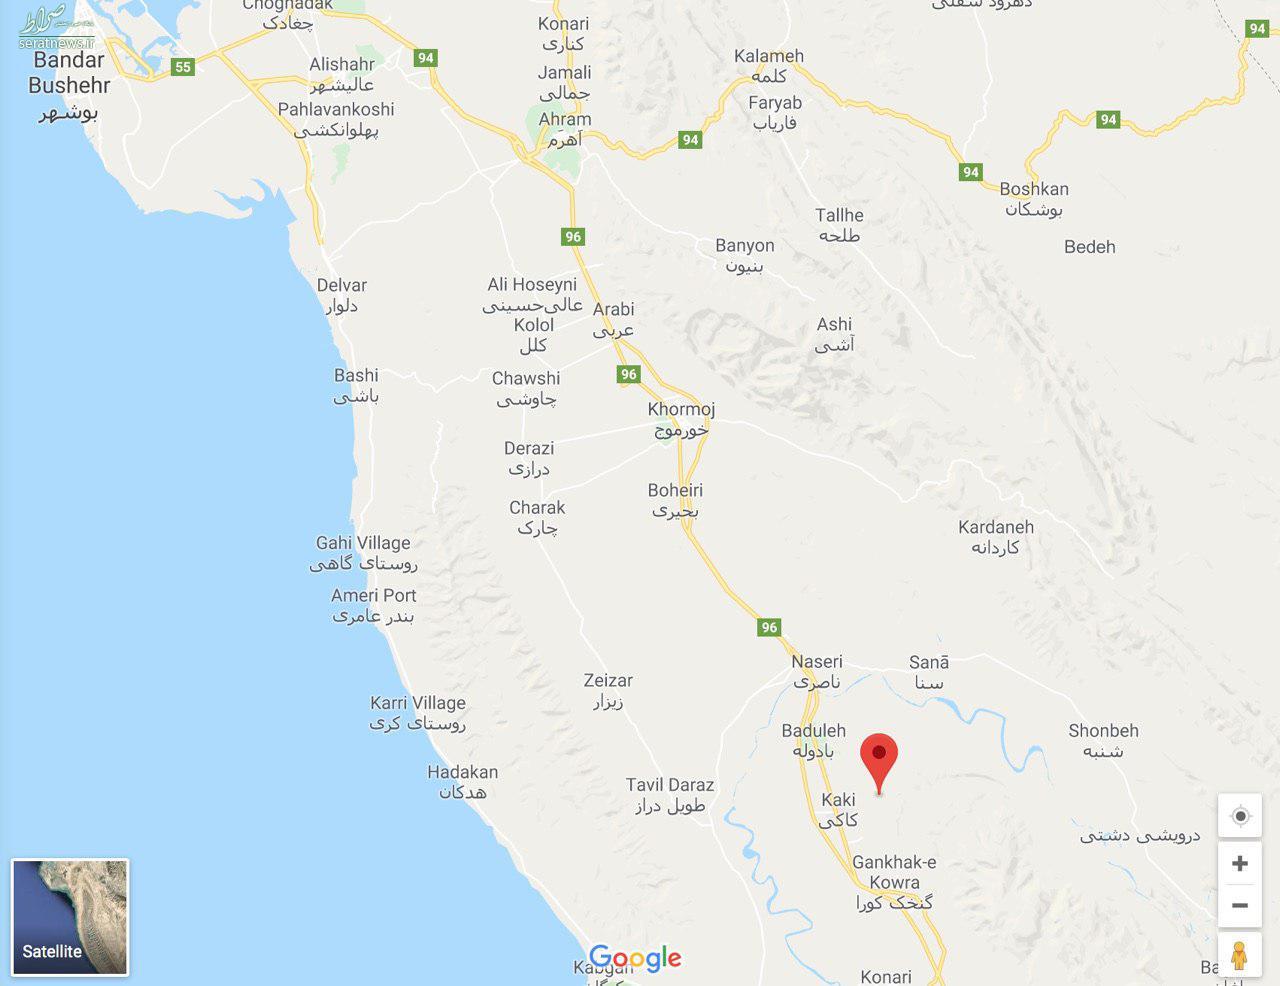 جزئیات زلزله 5.9 ریشتری در کاکی بوشهر/ خسارت جانی و مالی گزارش نشده/ اعزام 6 تیم ارزیاب به محل حادثه